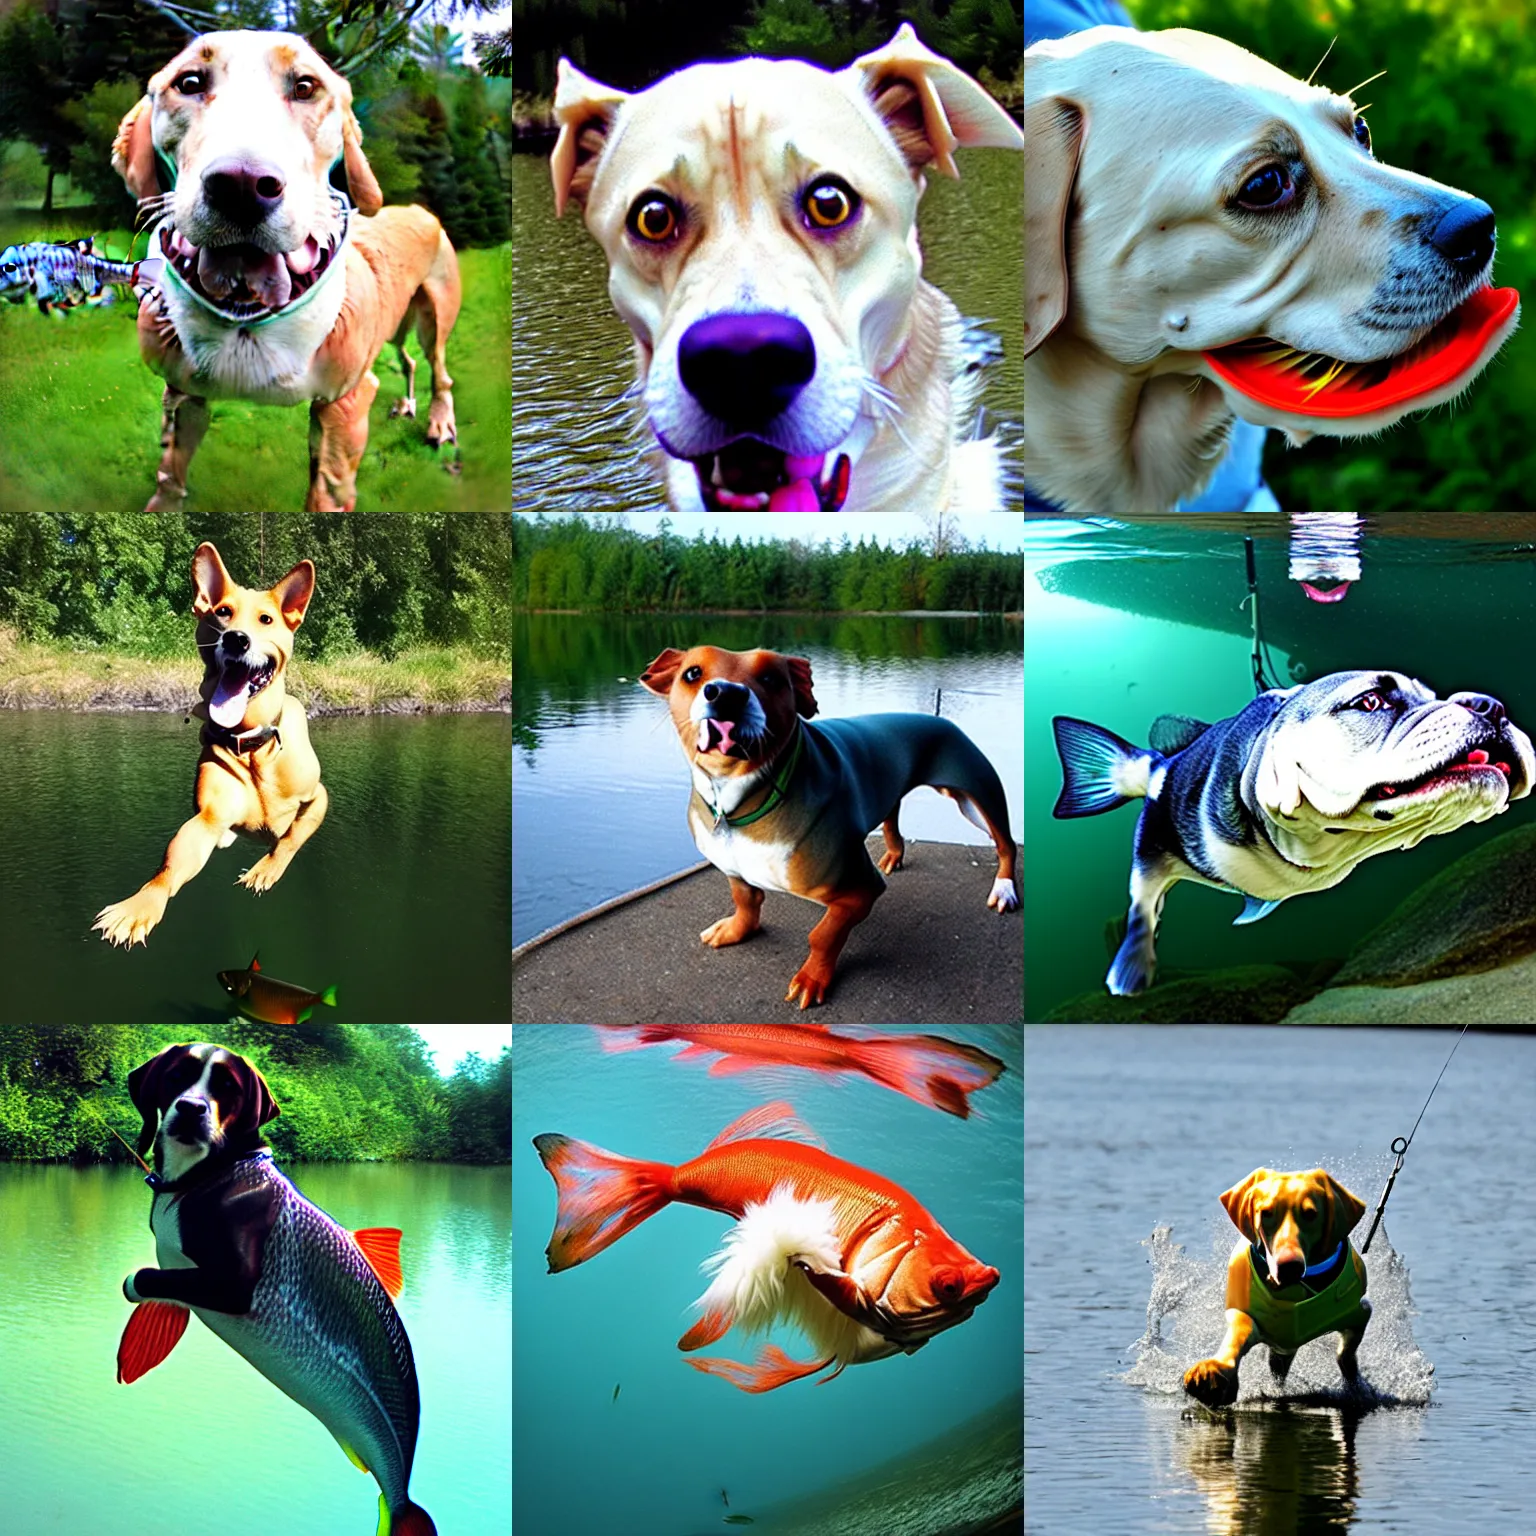 Prompt: fishdog